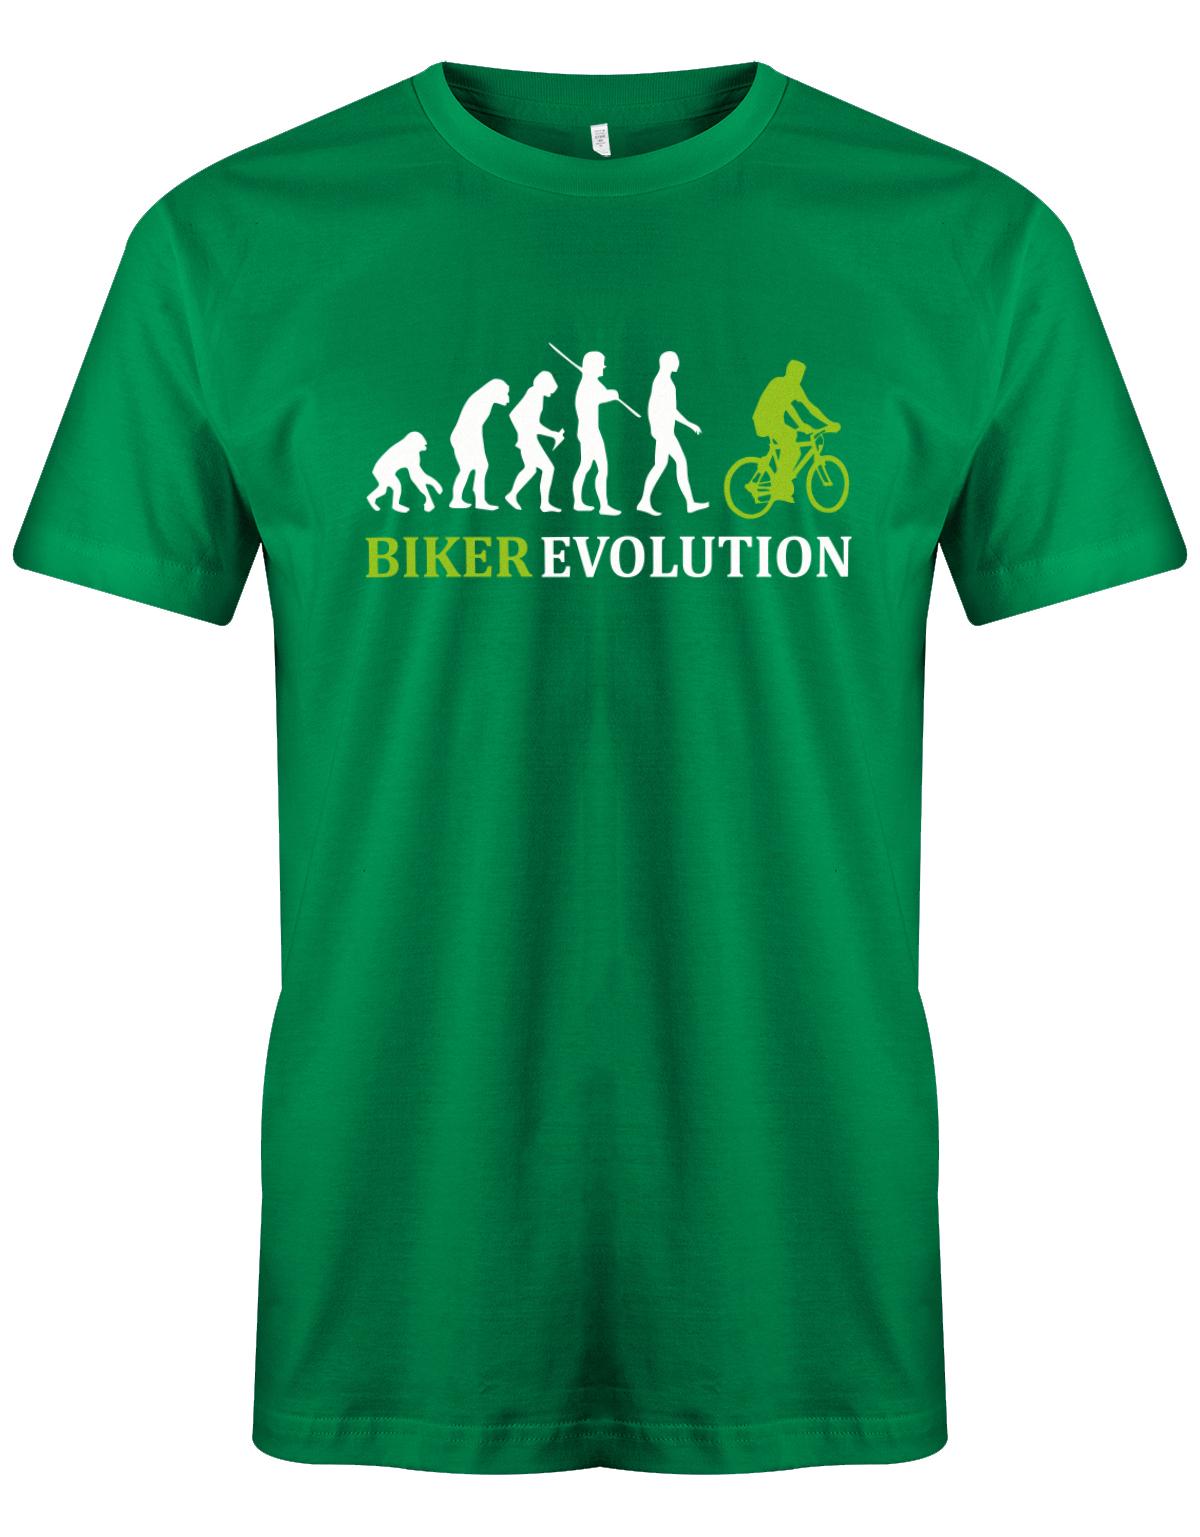 Biker-Evolution-Herren-Shirt-Gr-n